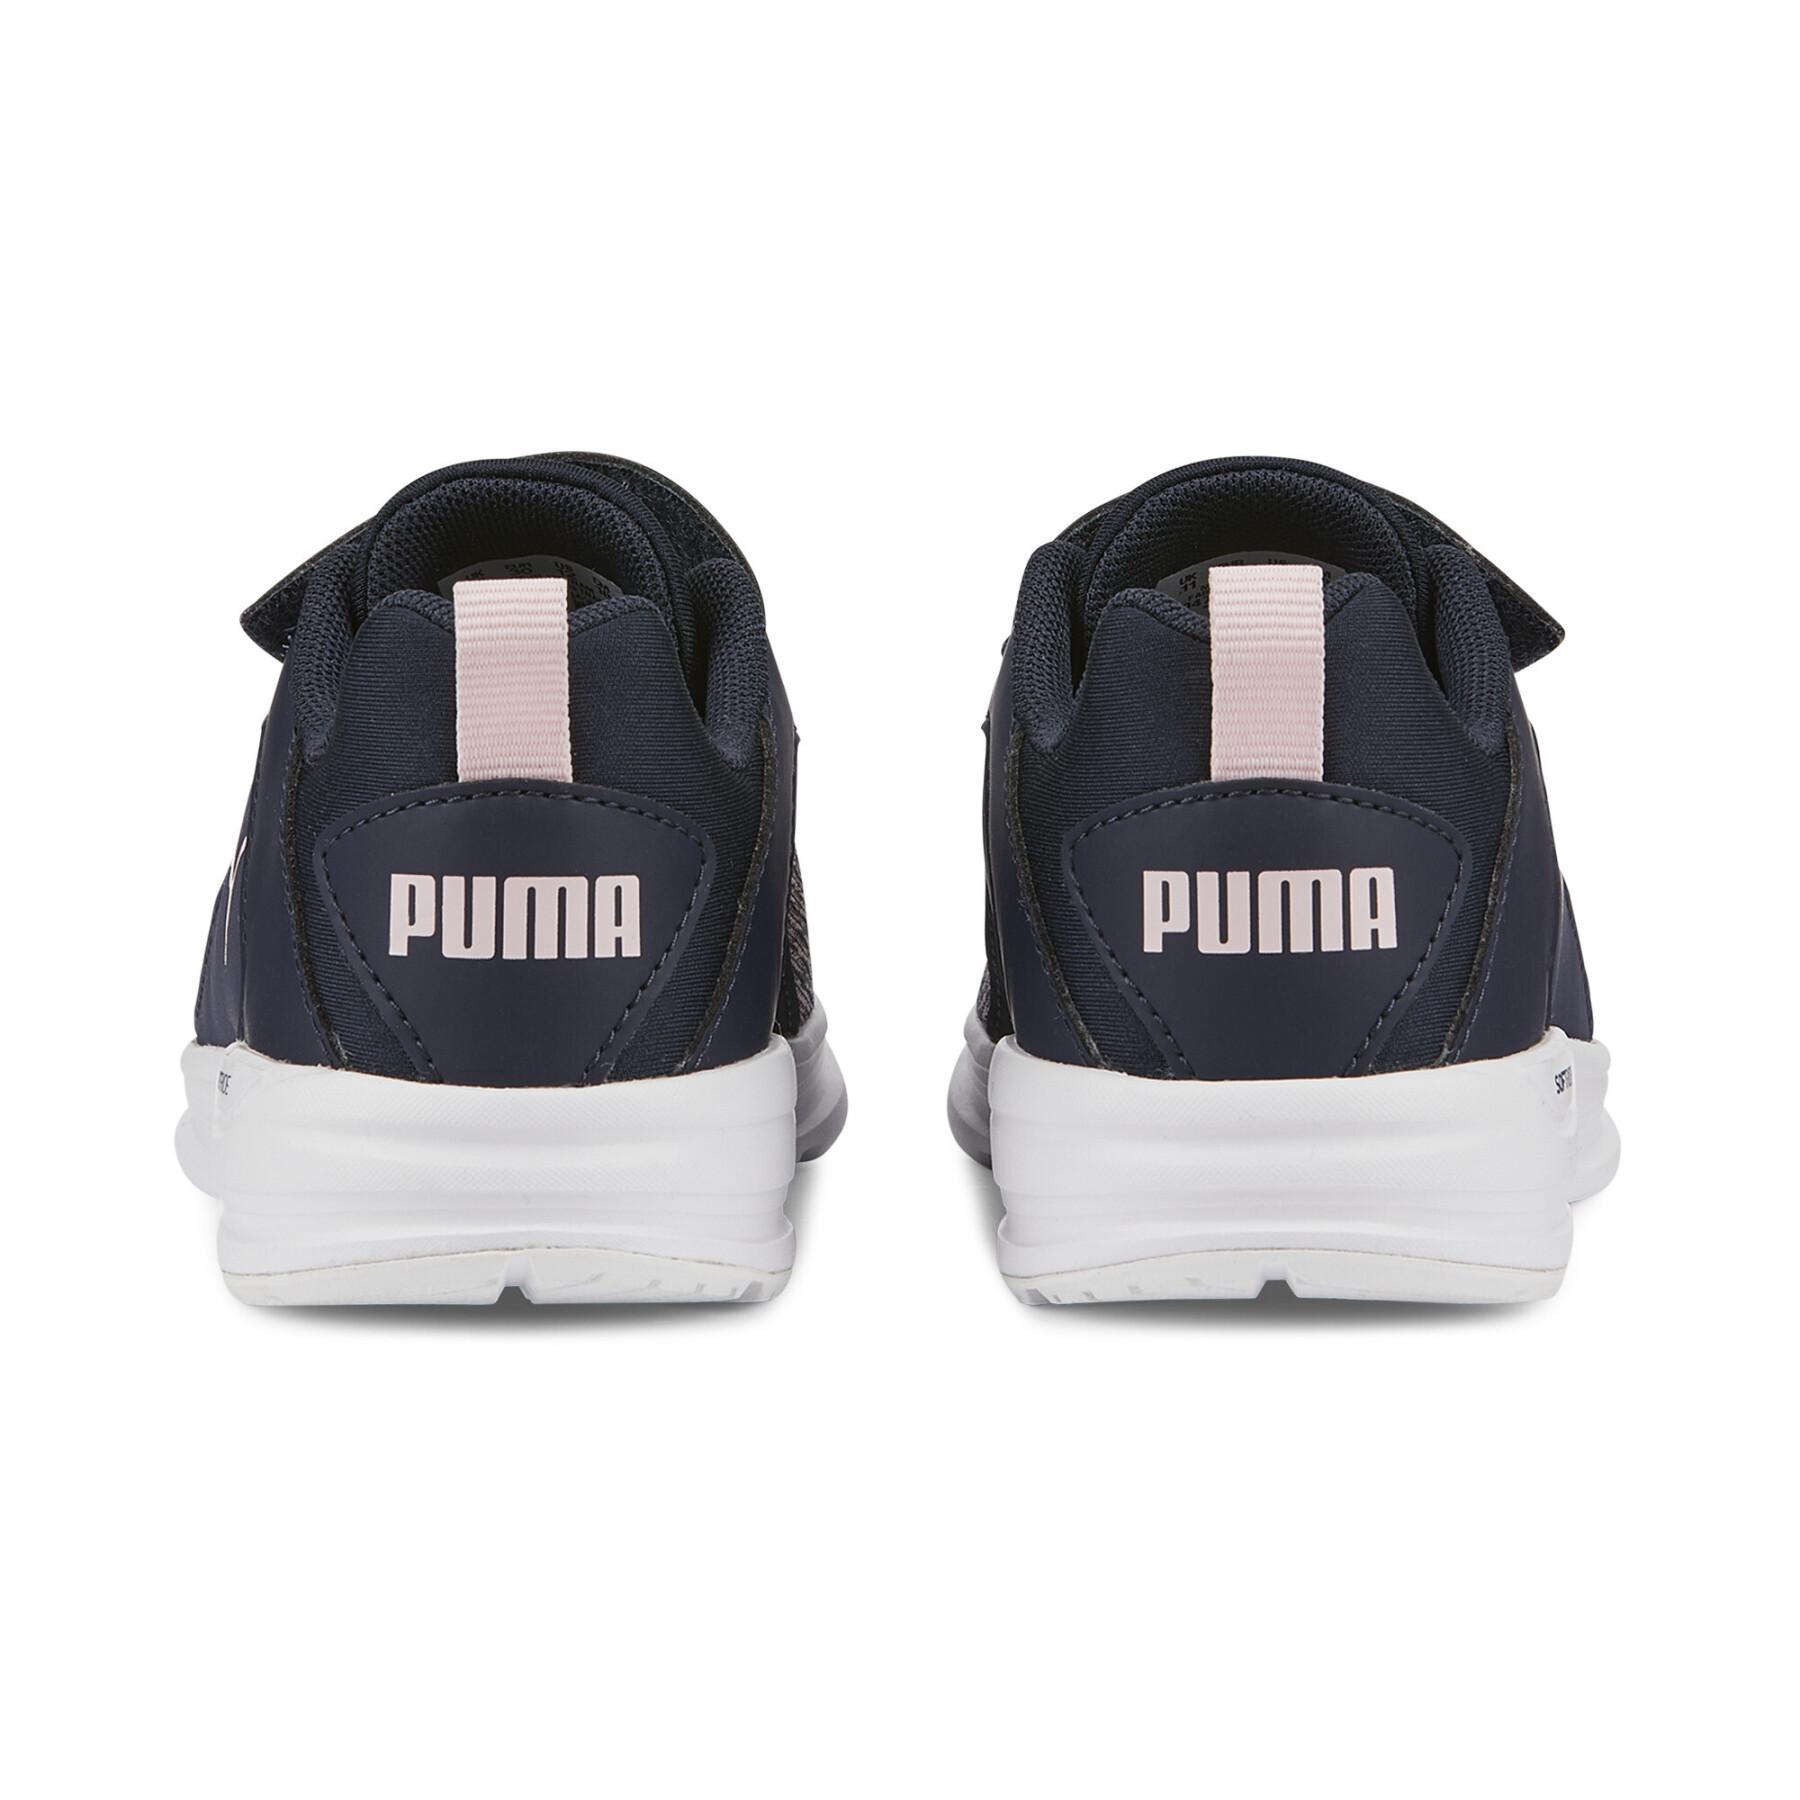 Children's sneakers Puma Comet 2 Alt V PS